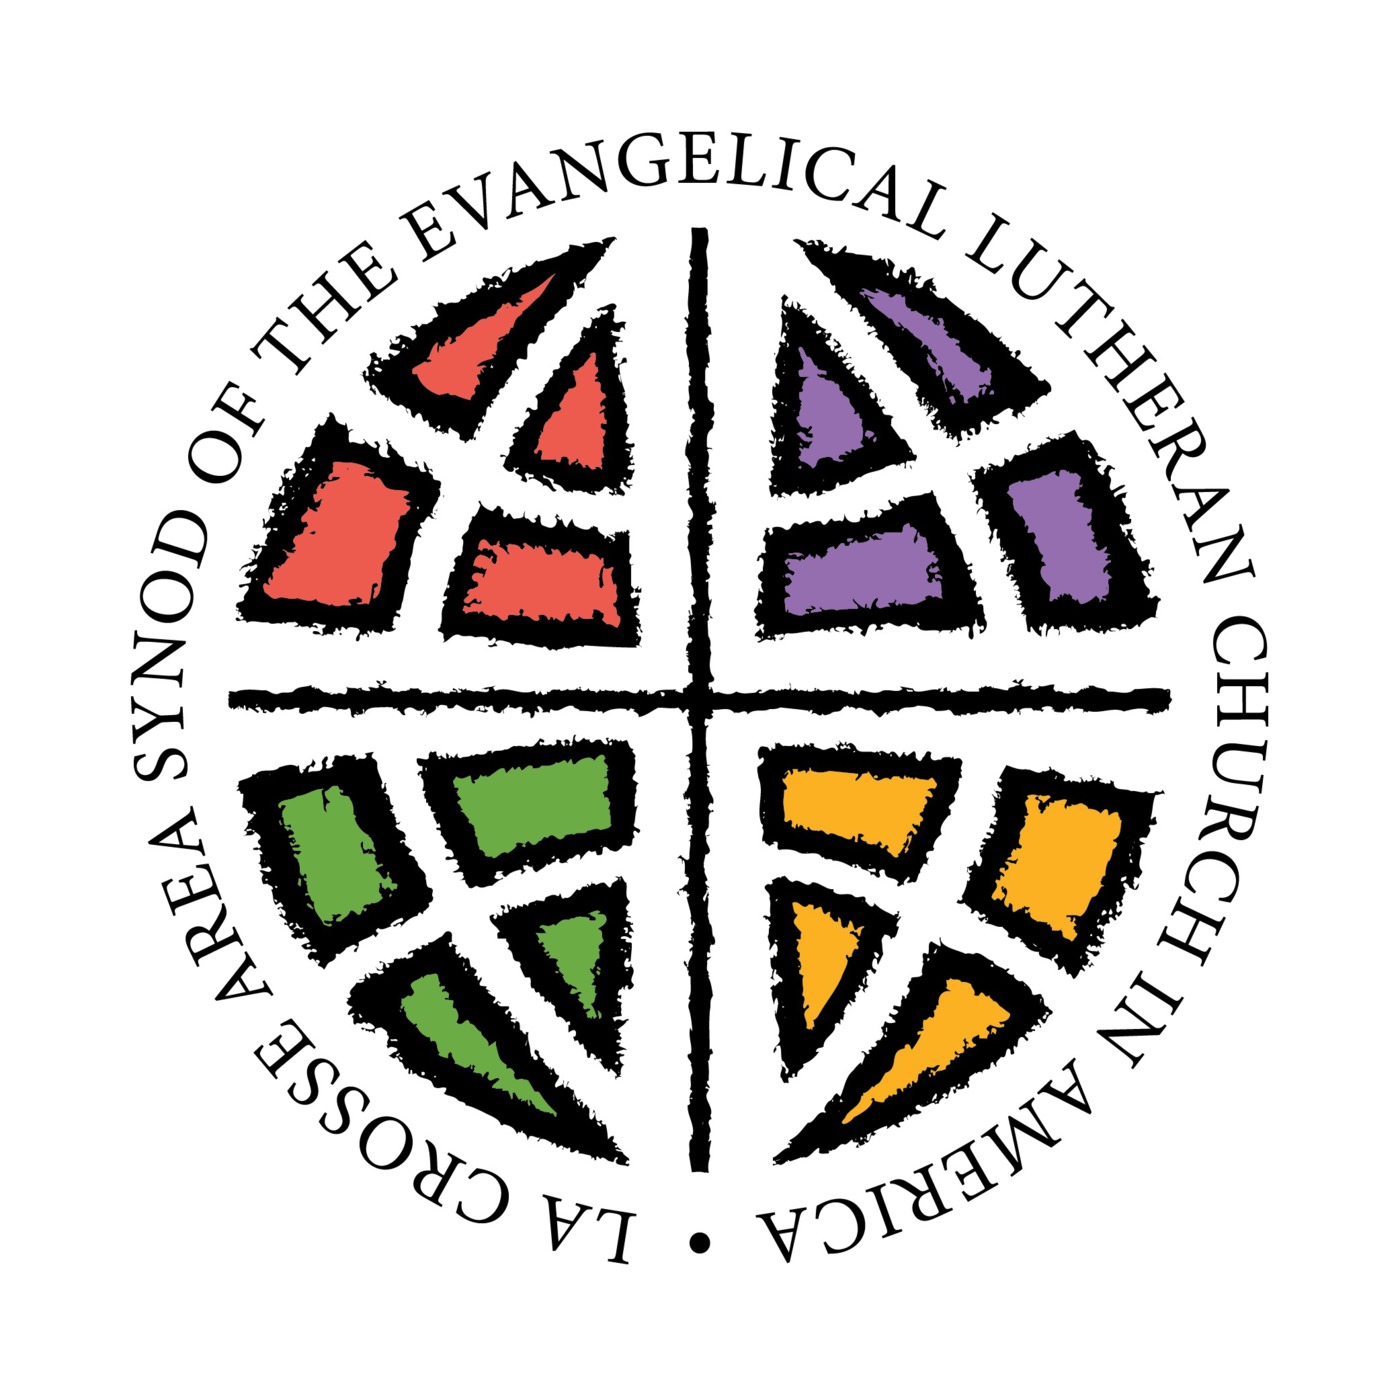 Tony Campolo at the La Crosse Area Synod of the ELCA, November 8, 2013